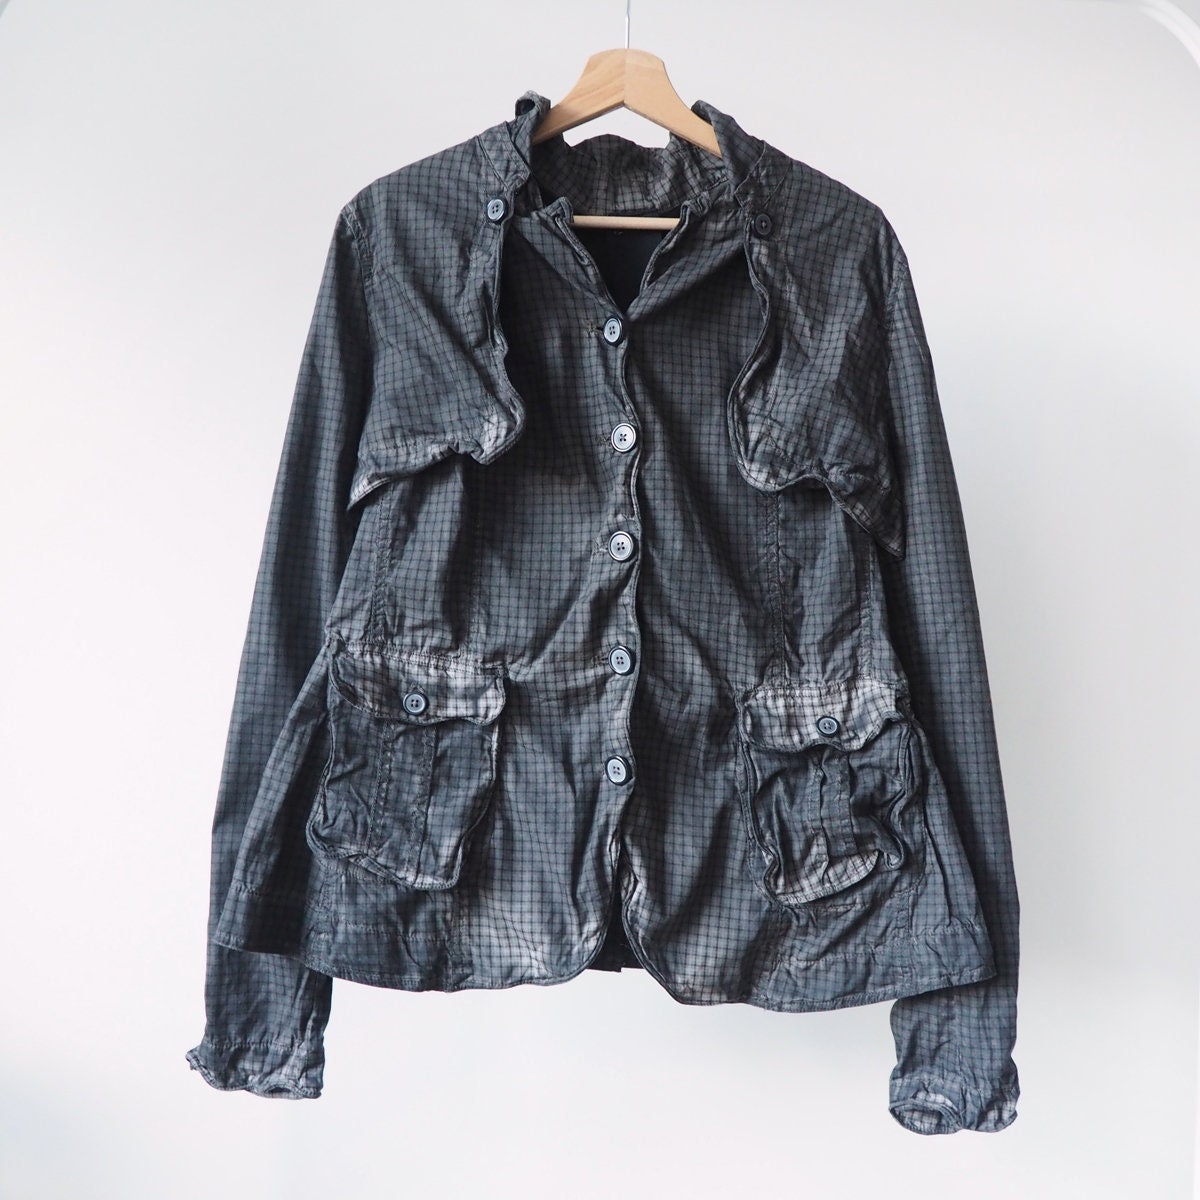 Rundholz Black Label Designer 2 in 1 Jacket Vest Shrug Washed